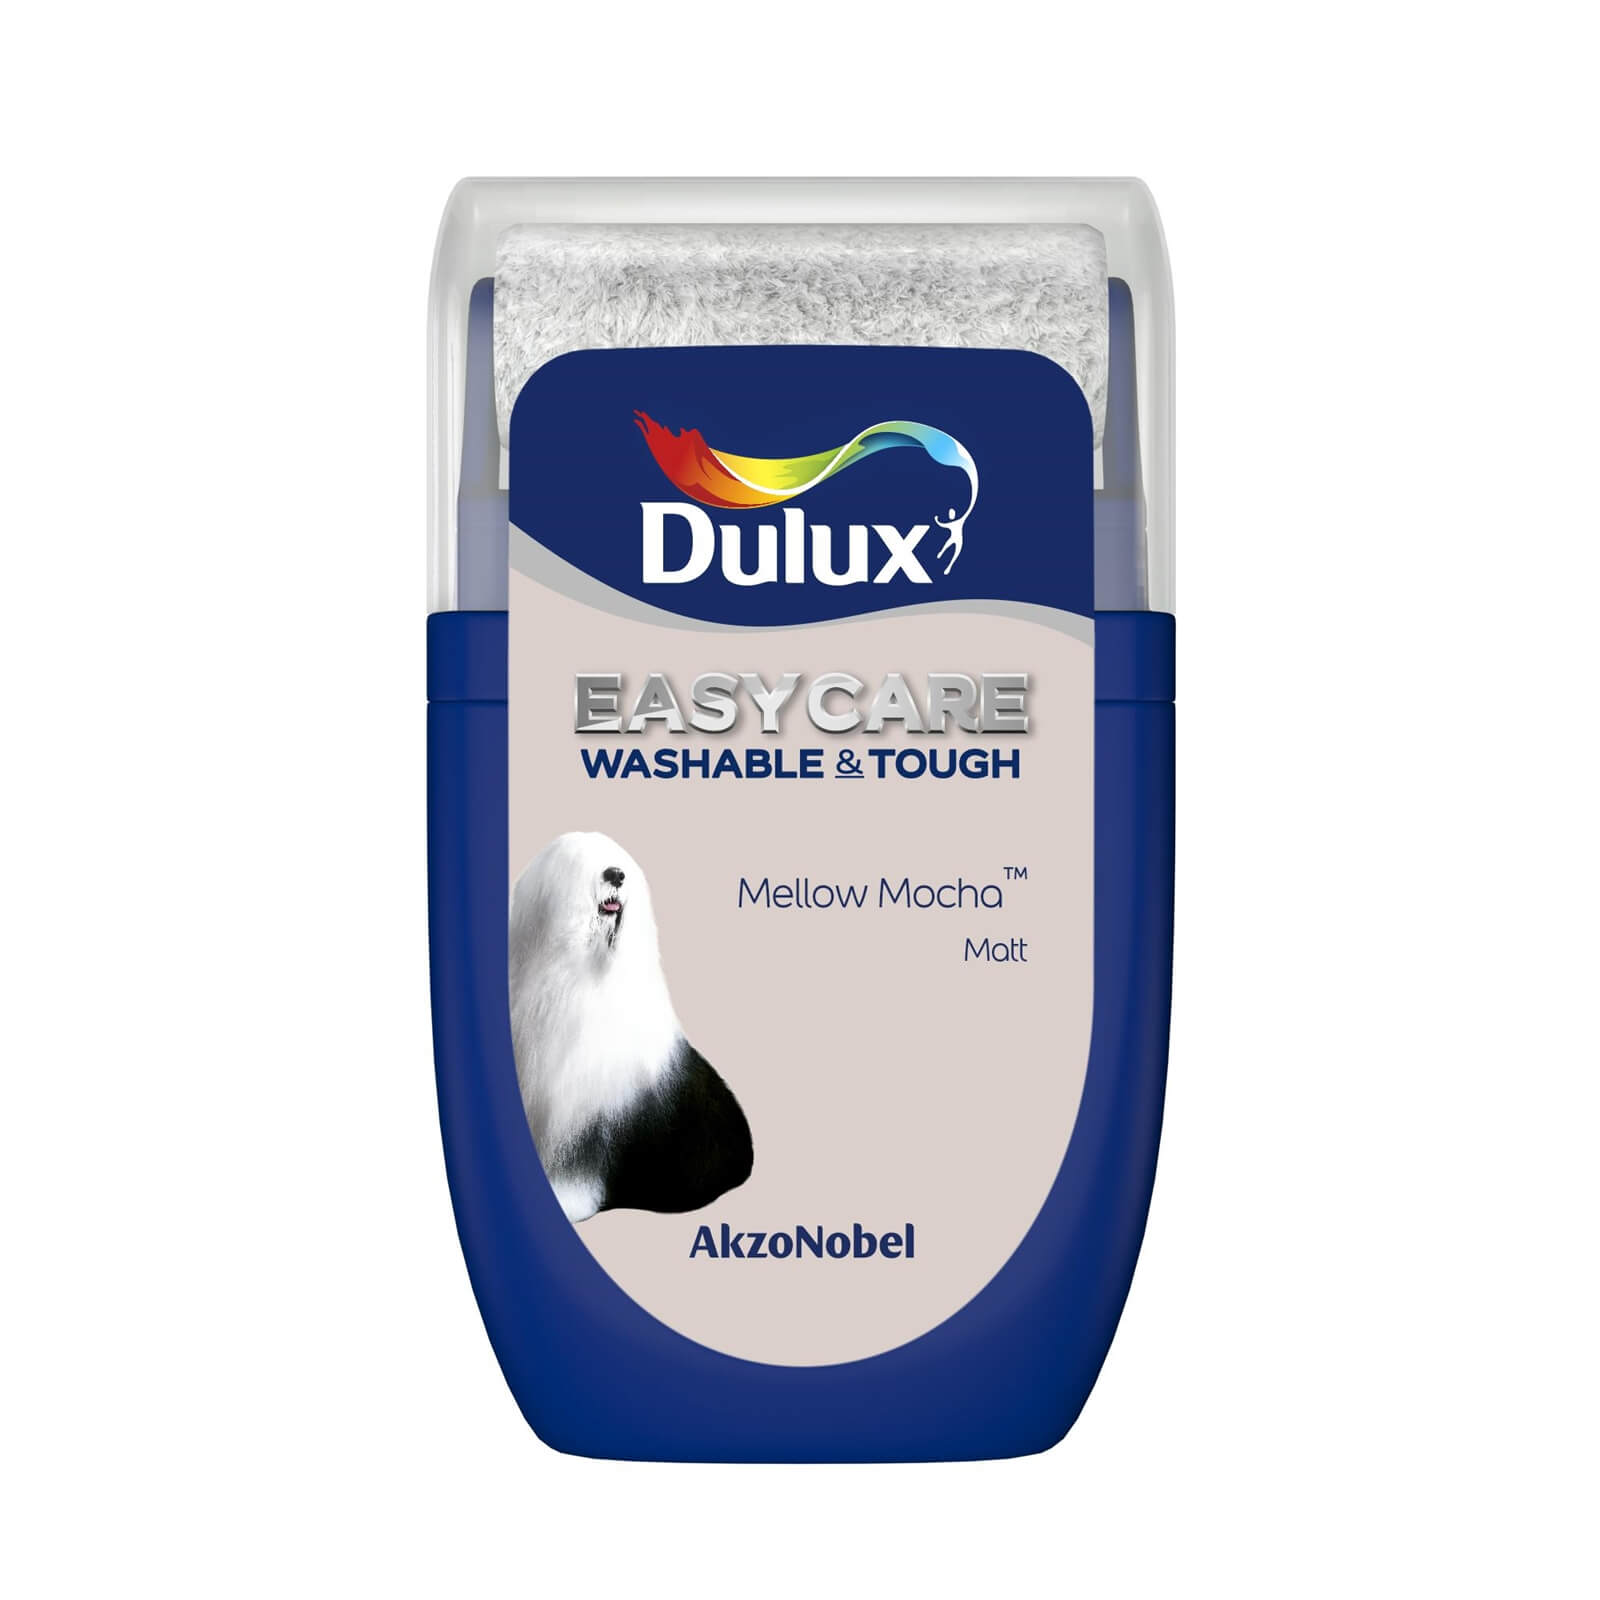 Dulux Easycare Washable & Tough Matt Paint Mellow Mocha - Tester 30ml